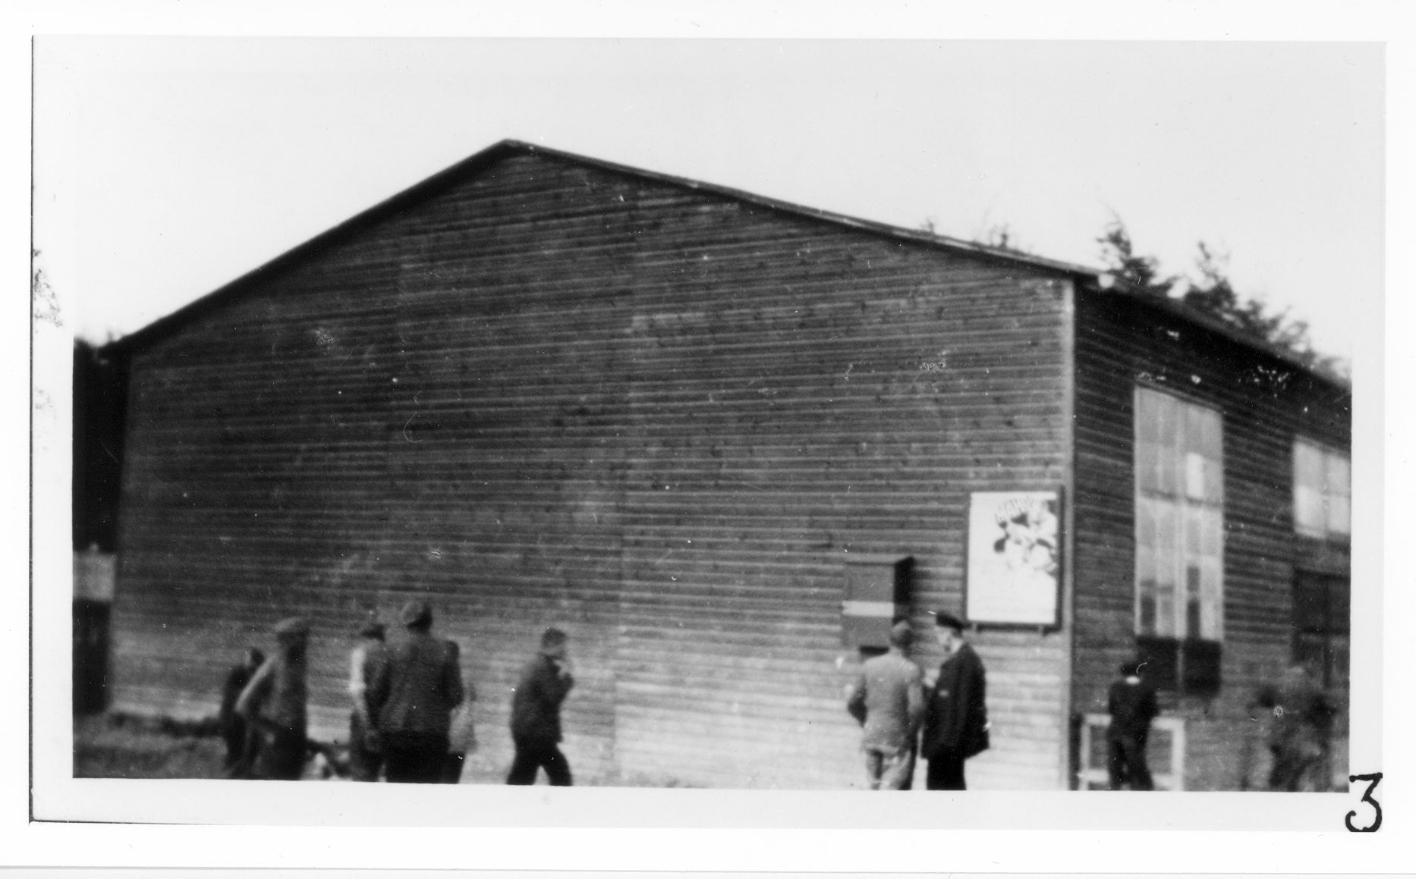 Häftlinge vor der Kinobaracke. Rechts an der Barackenwand hängt ein Filmplakat.